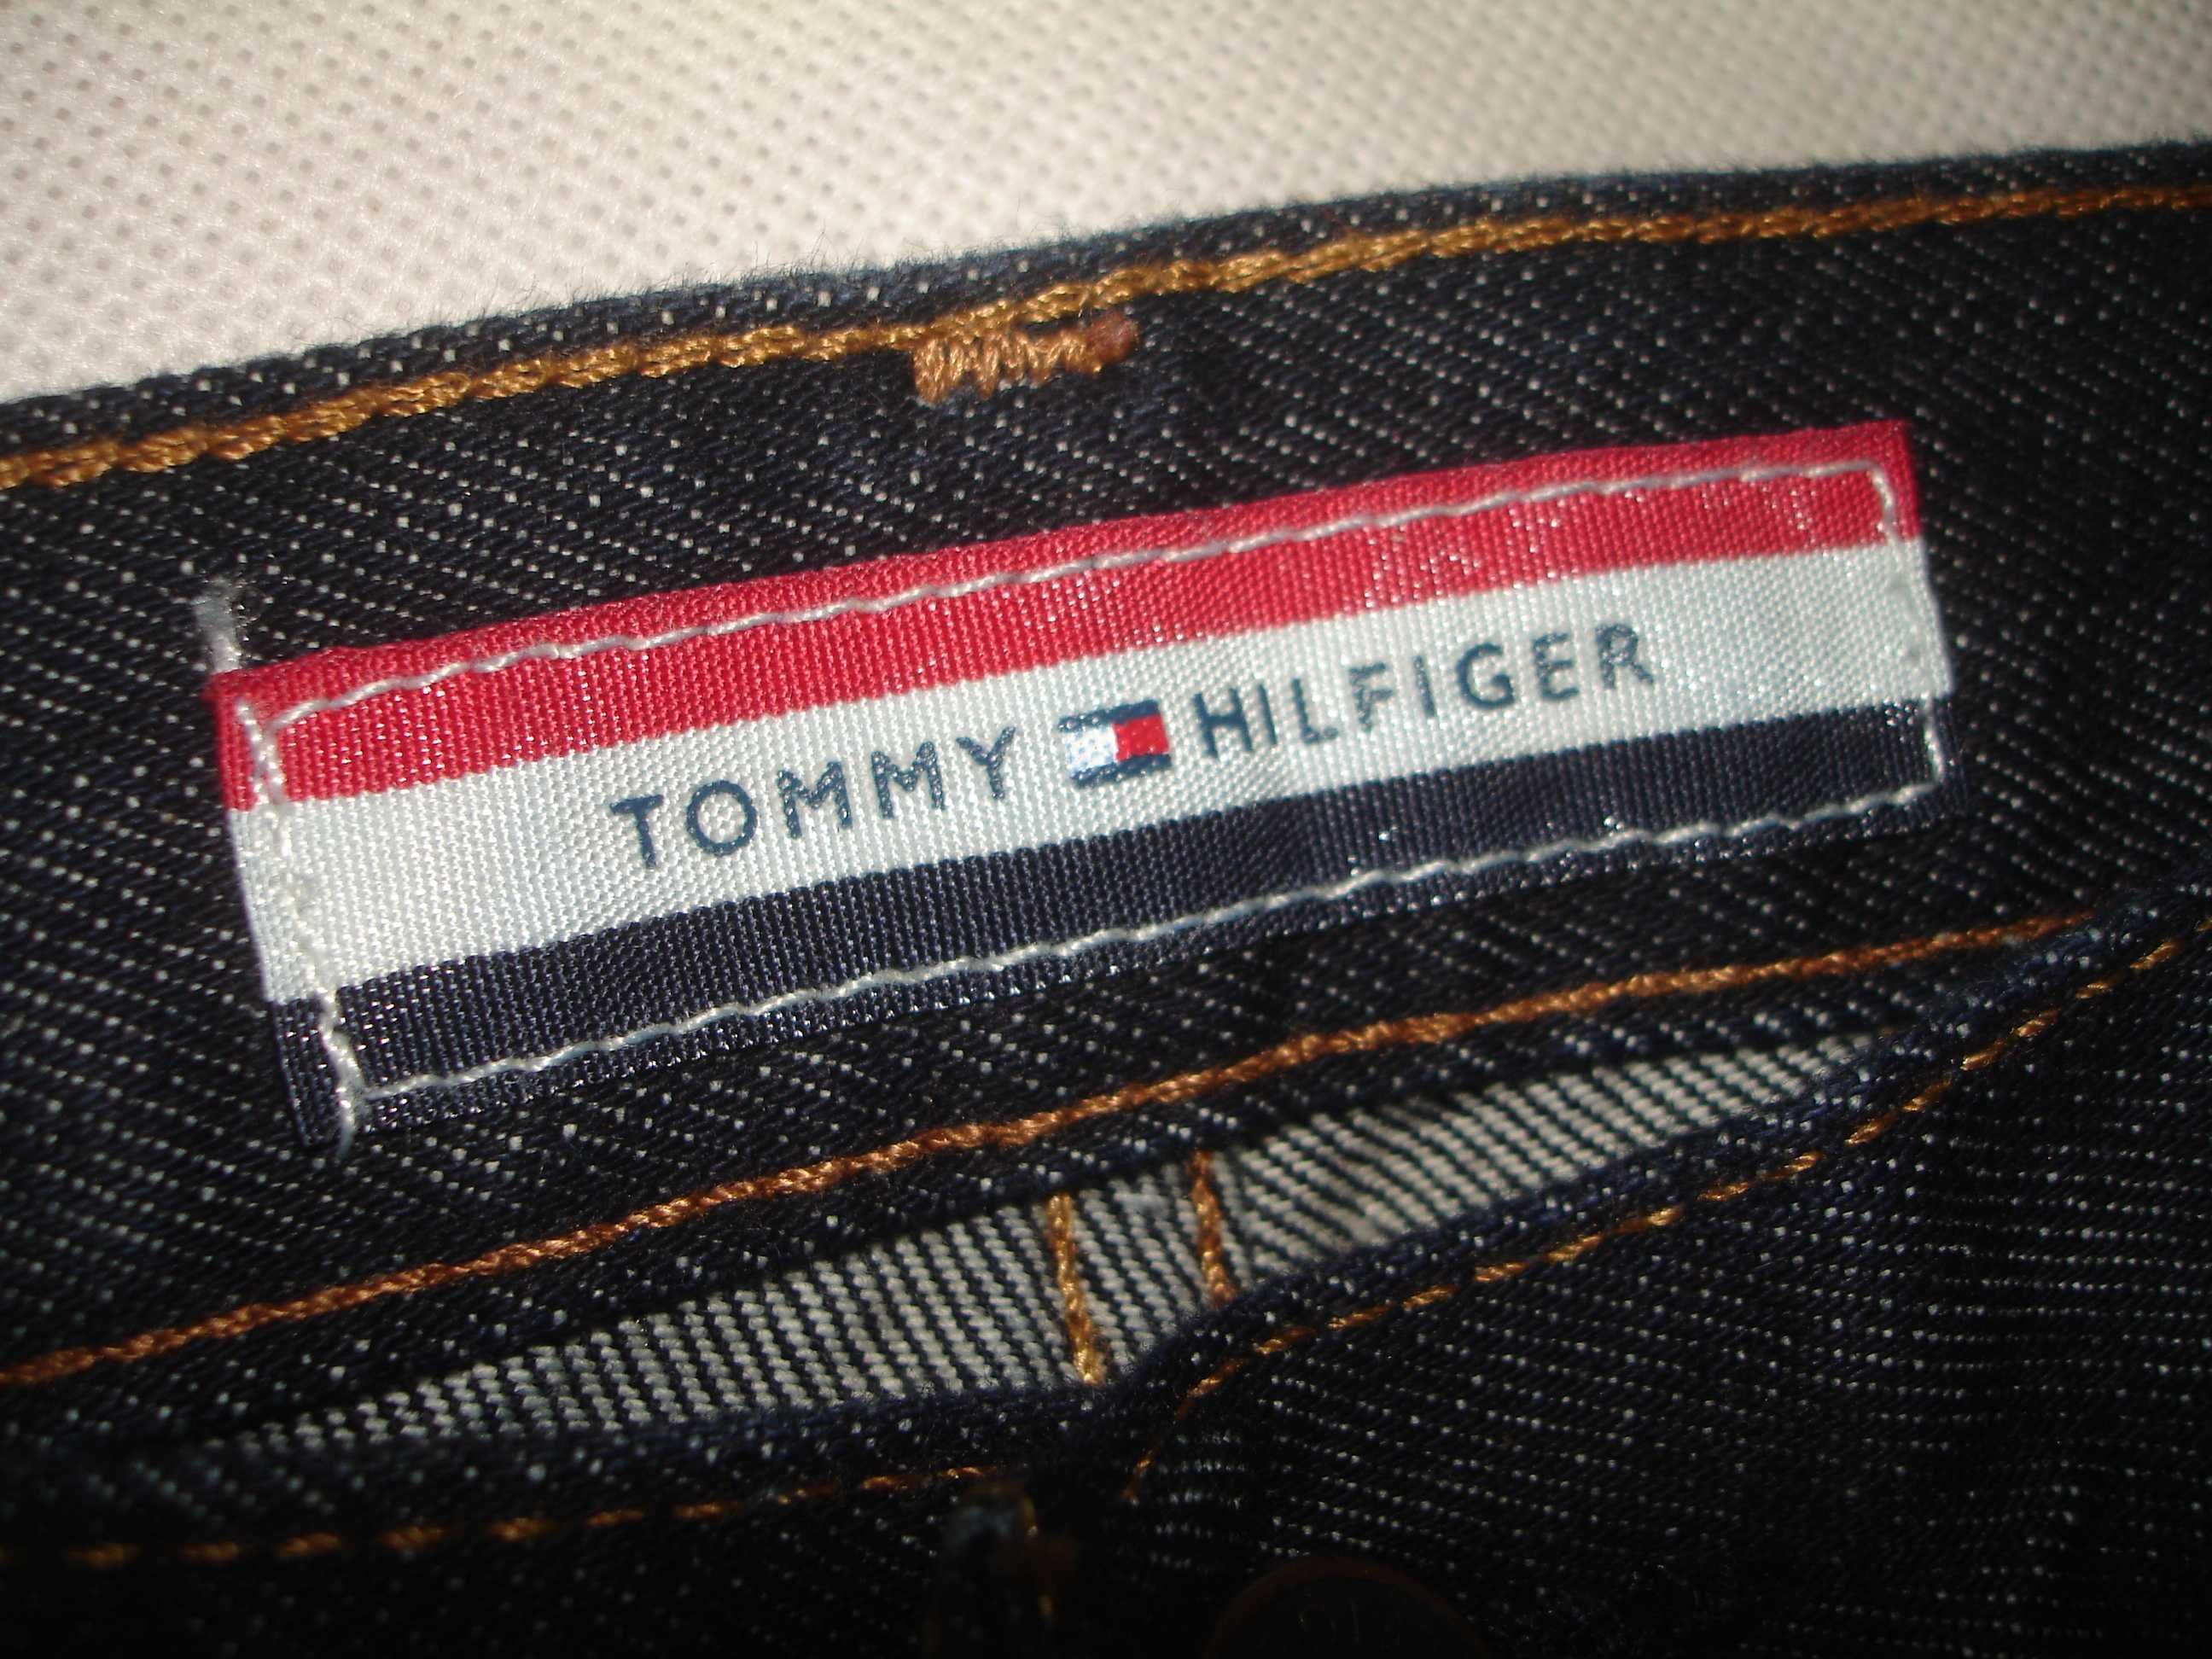 TOMMY HILFIGER W29 L30 spodnie Jeans - Sklep 450zł - Okazja!